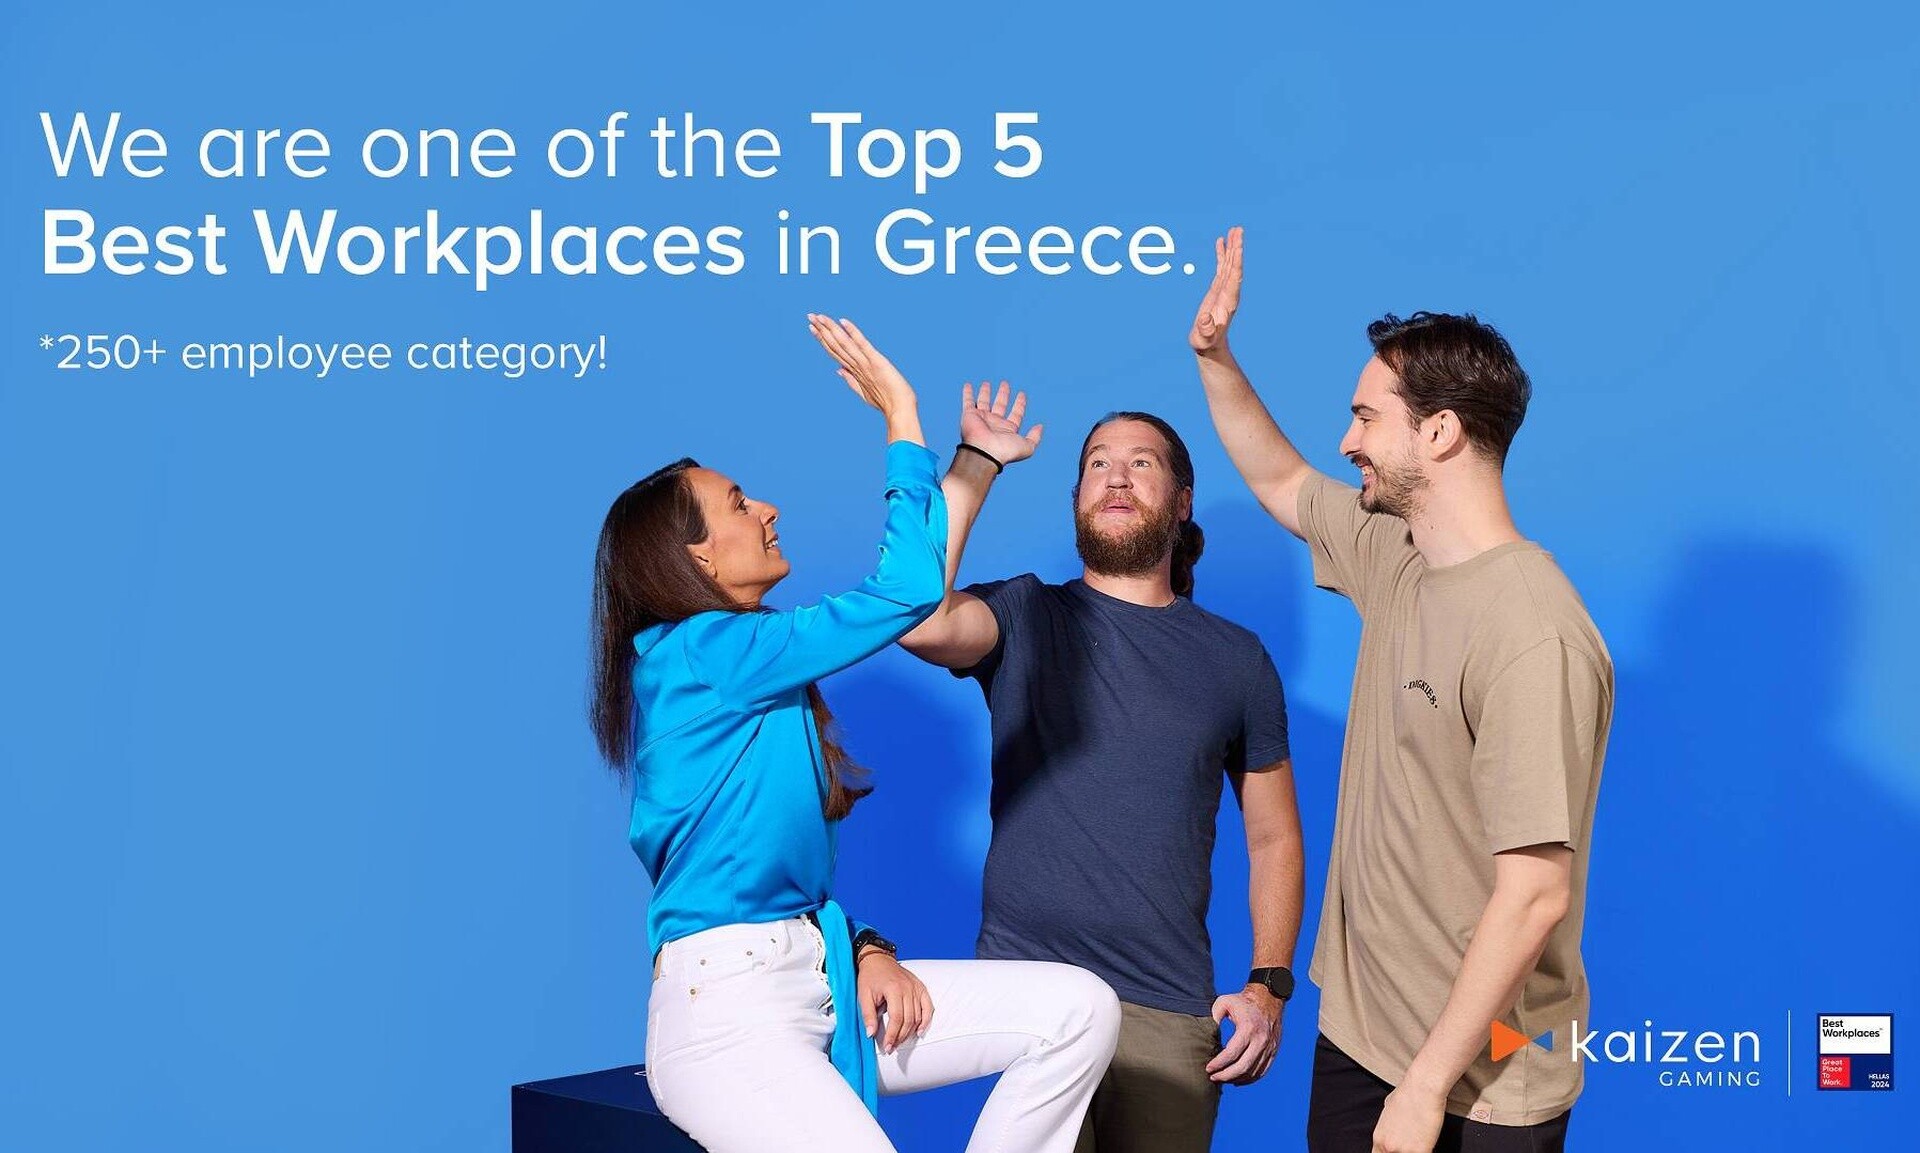 Η Kaizen Gaming ανάμεσα στις 5 εταιρείες με το καλύτερο εργασιακό περιβάλλον στην Ελλάδα